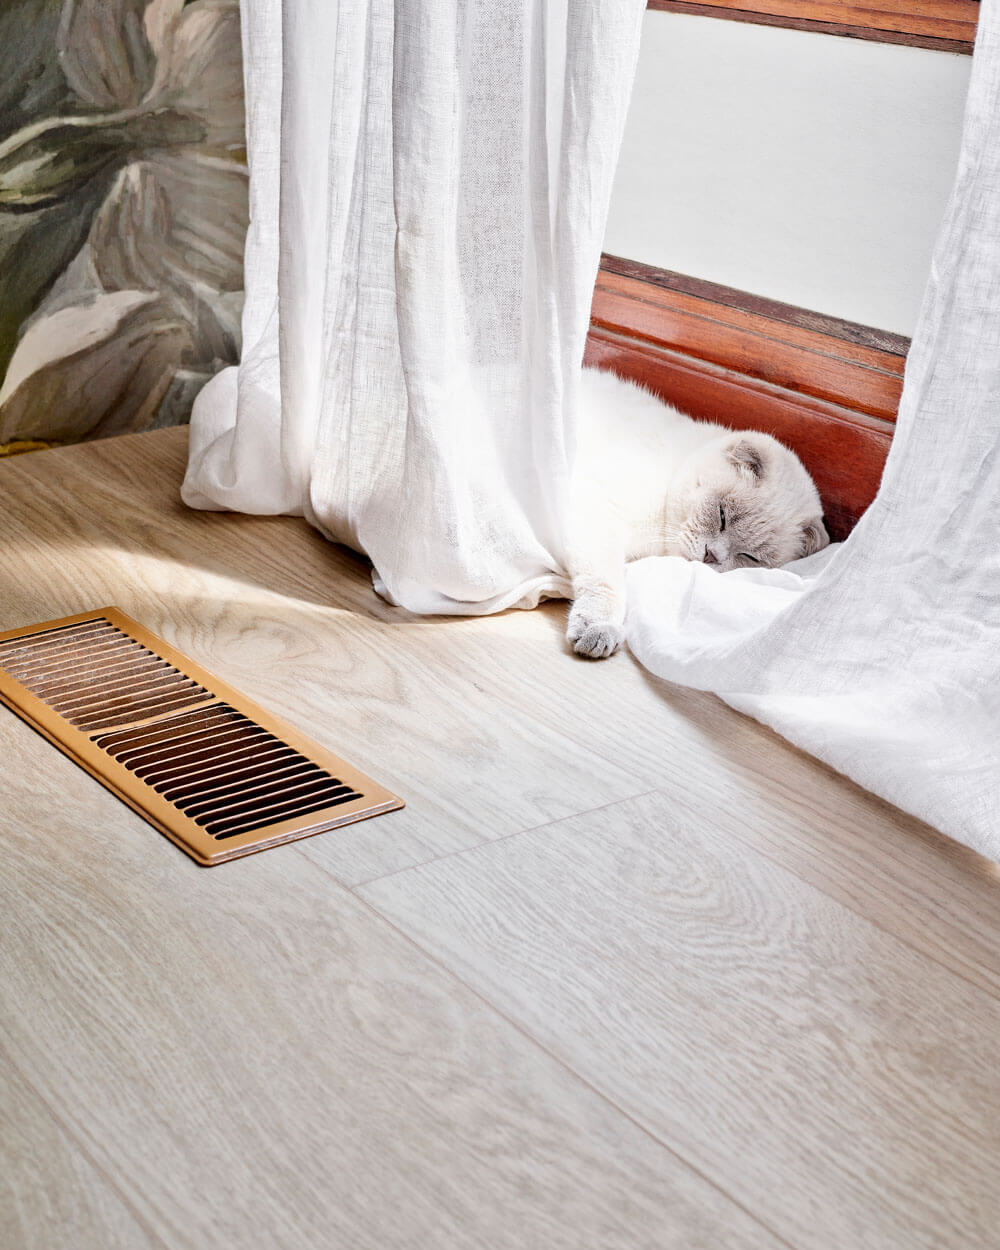 Un chat blanc dort contre le cadre de la fenêtre du revêtement de sol vinyle de luxe Moduleo LayRed Laurel Oak 51230 Embossed.